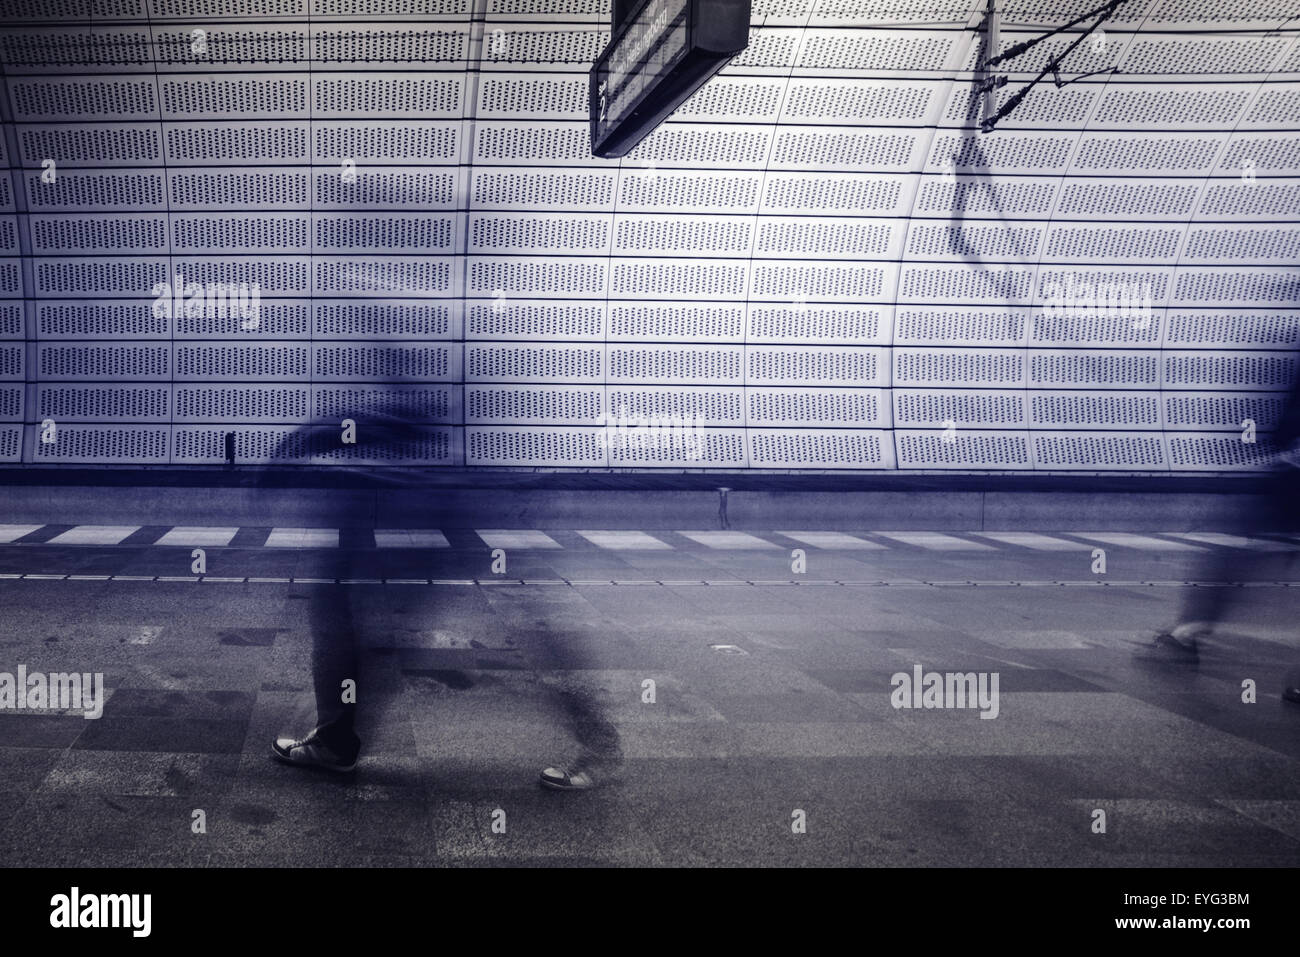 Desenfoque de movimiento de personas en la estación de tren subterráneo, plataforma abstracto viajeros irreconocible, en blanco y negro, imágenes monocromáticas Foto de stock